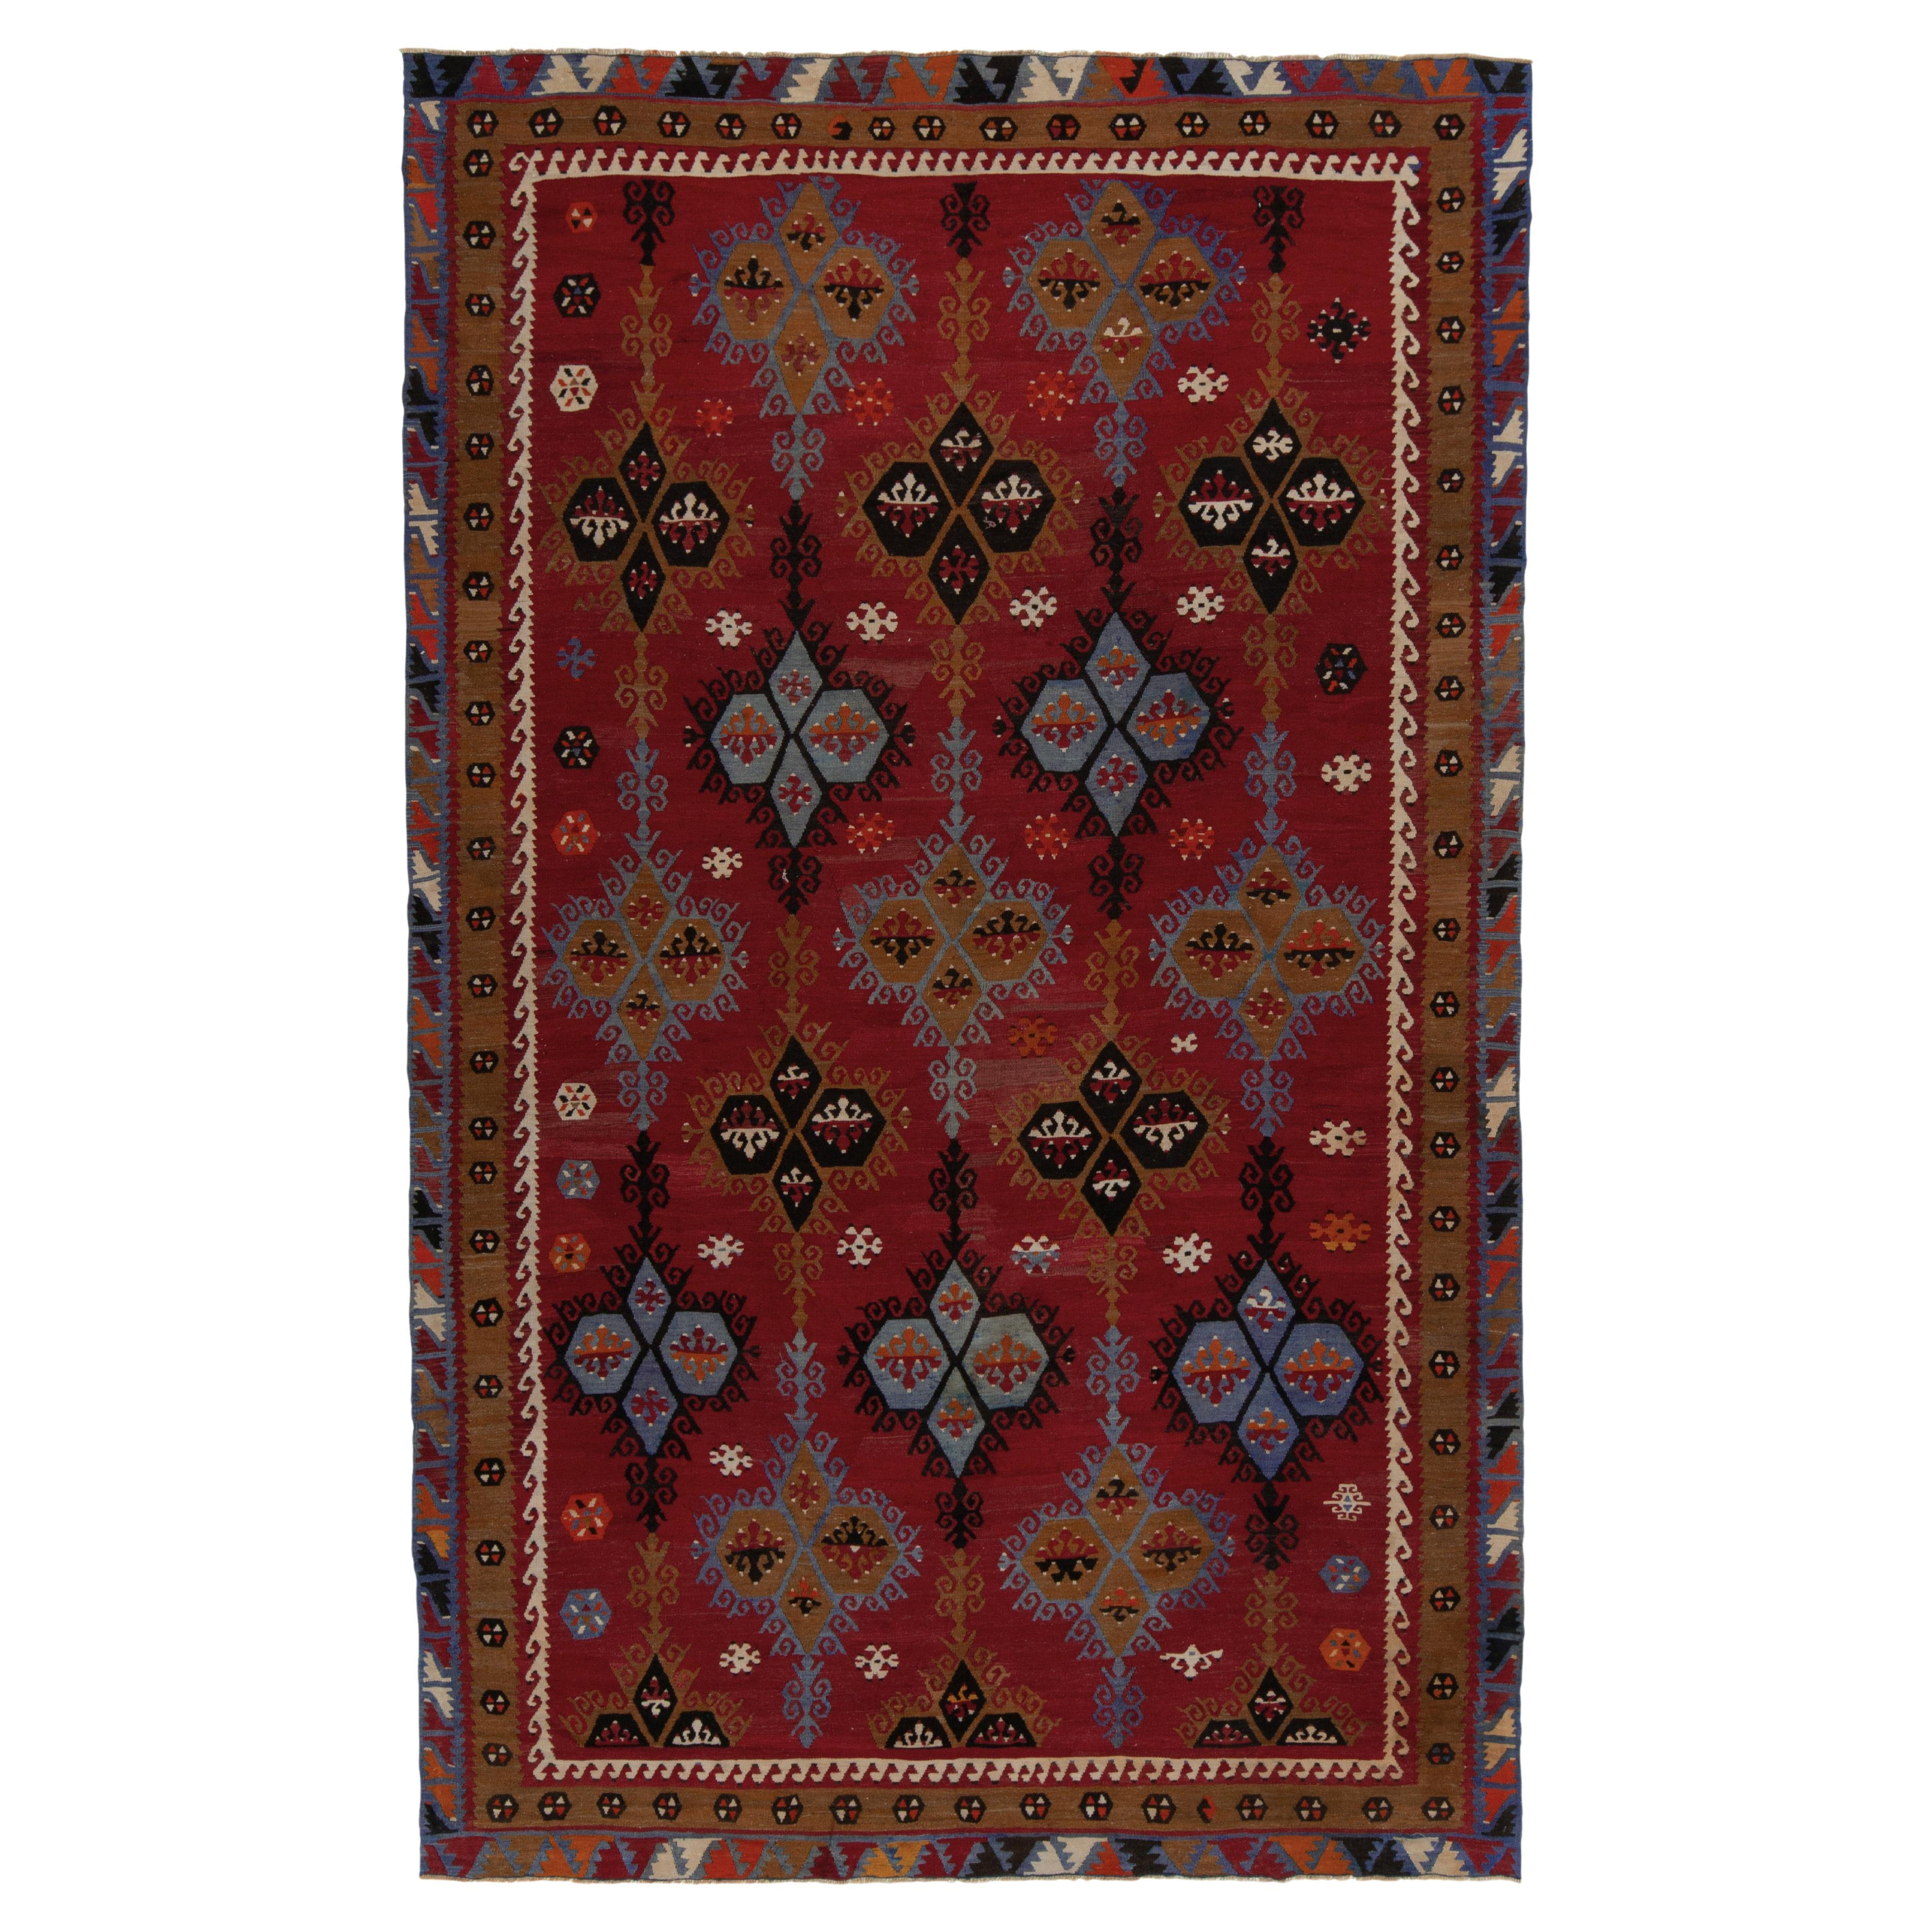 Tapis Kilim tribal vintage tissé à la main à motifs géométriques rouges et bleus par Rug & Kilim